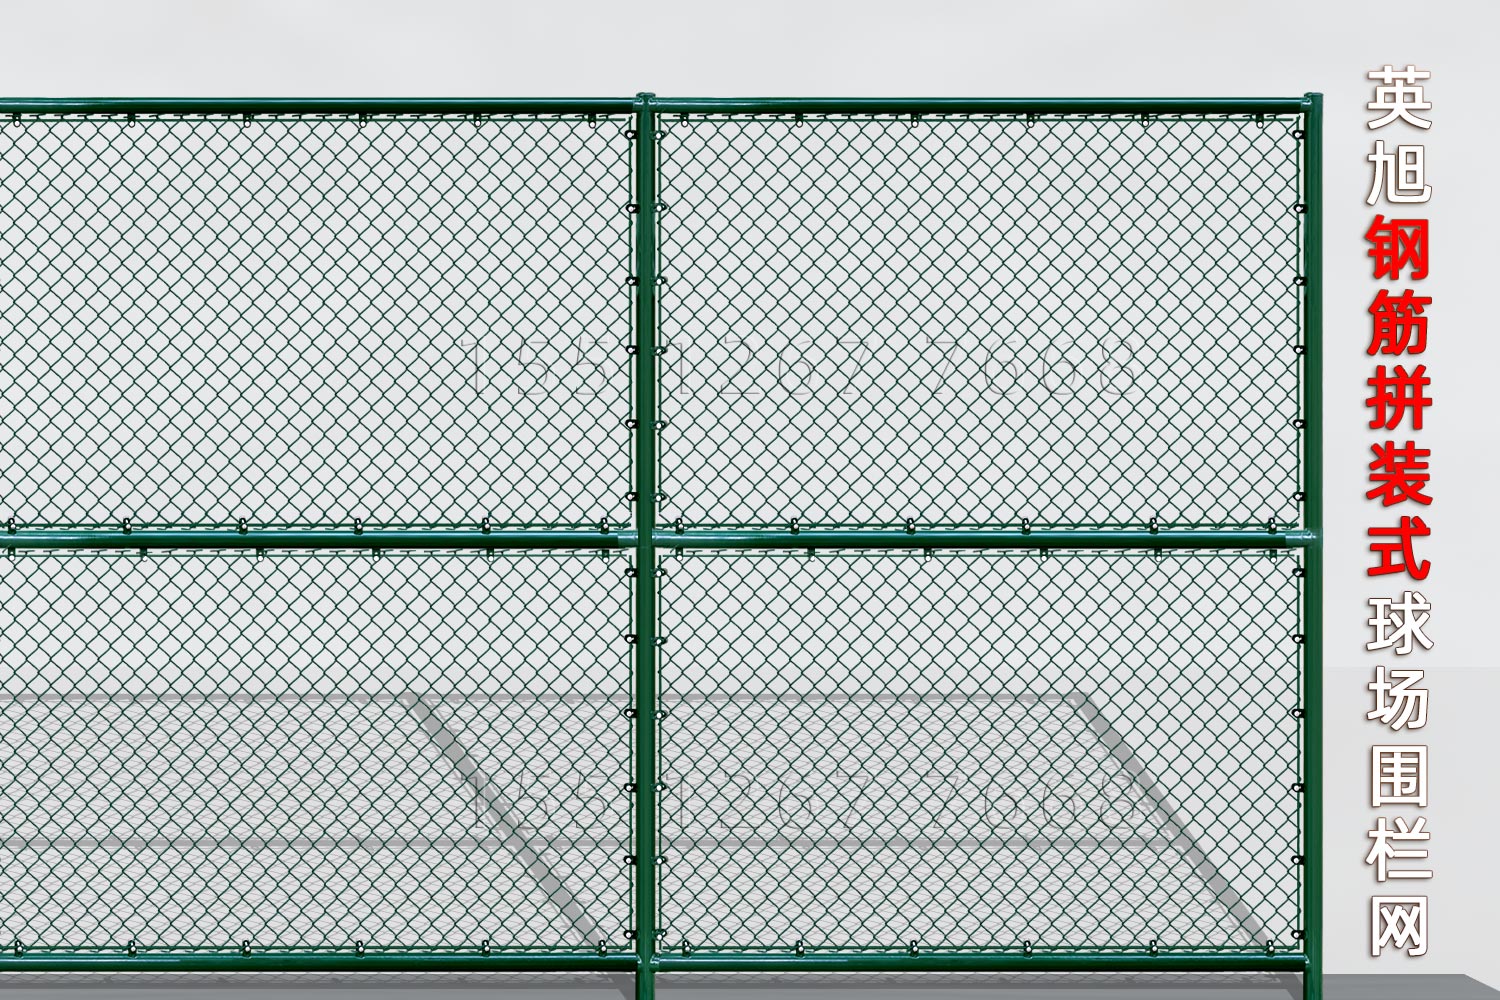 上海钢筋组装式球场围栏网